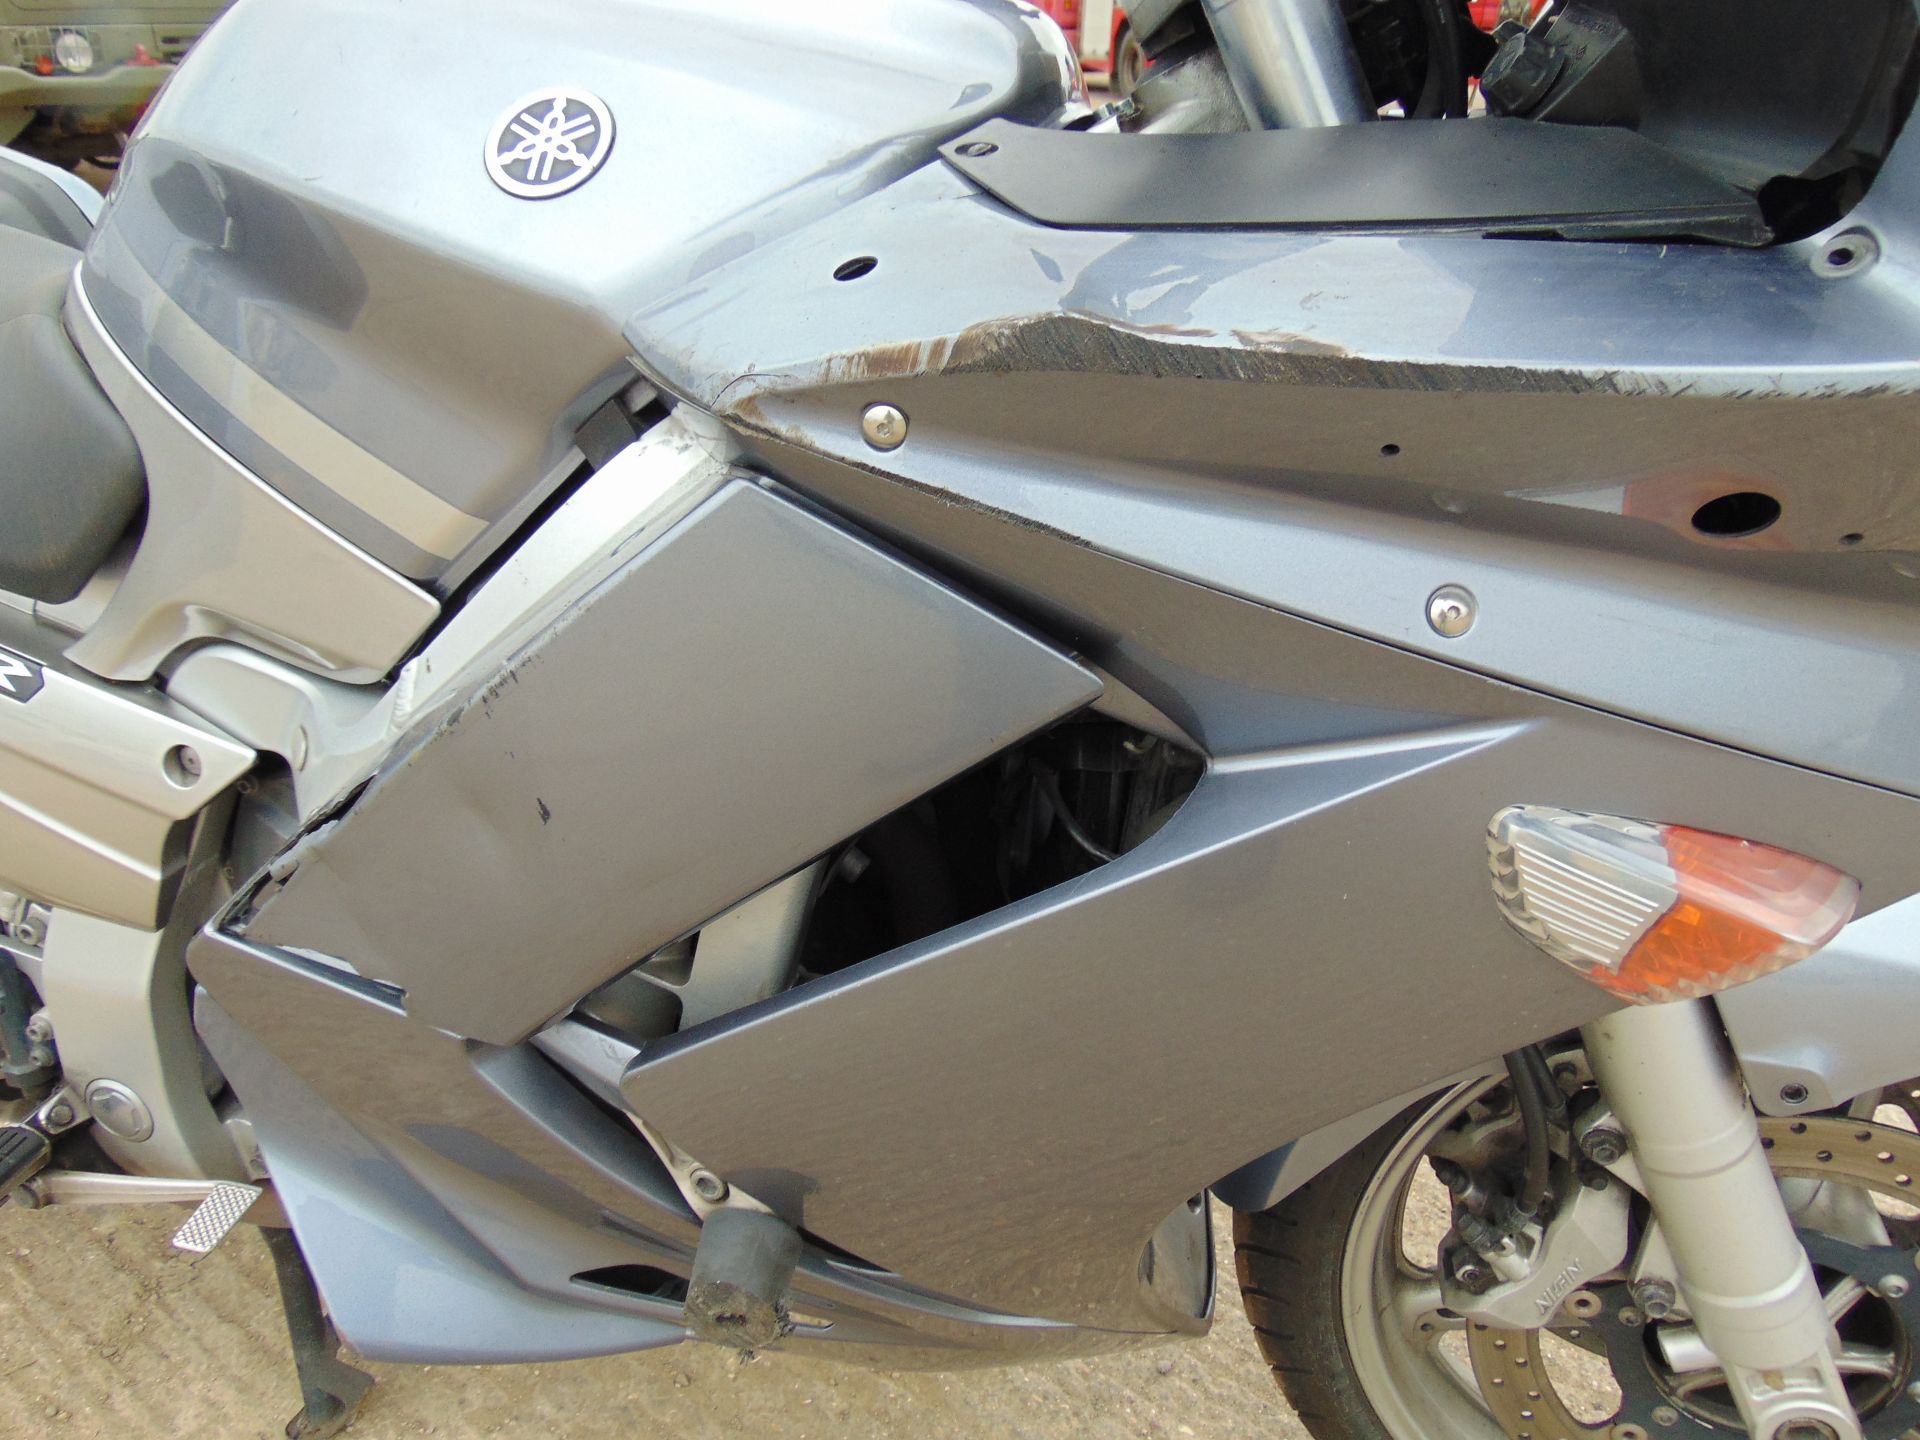 2008 Yamaha FJR1300 Motorbike - Image 12 of 15